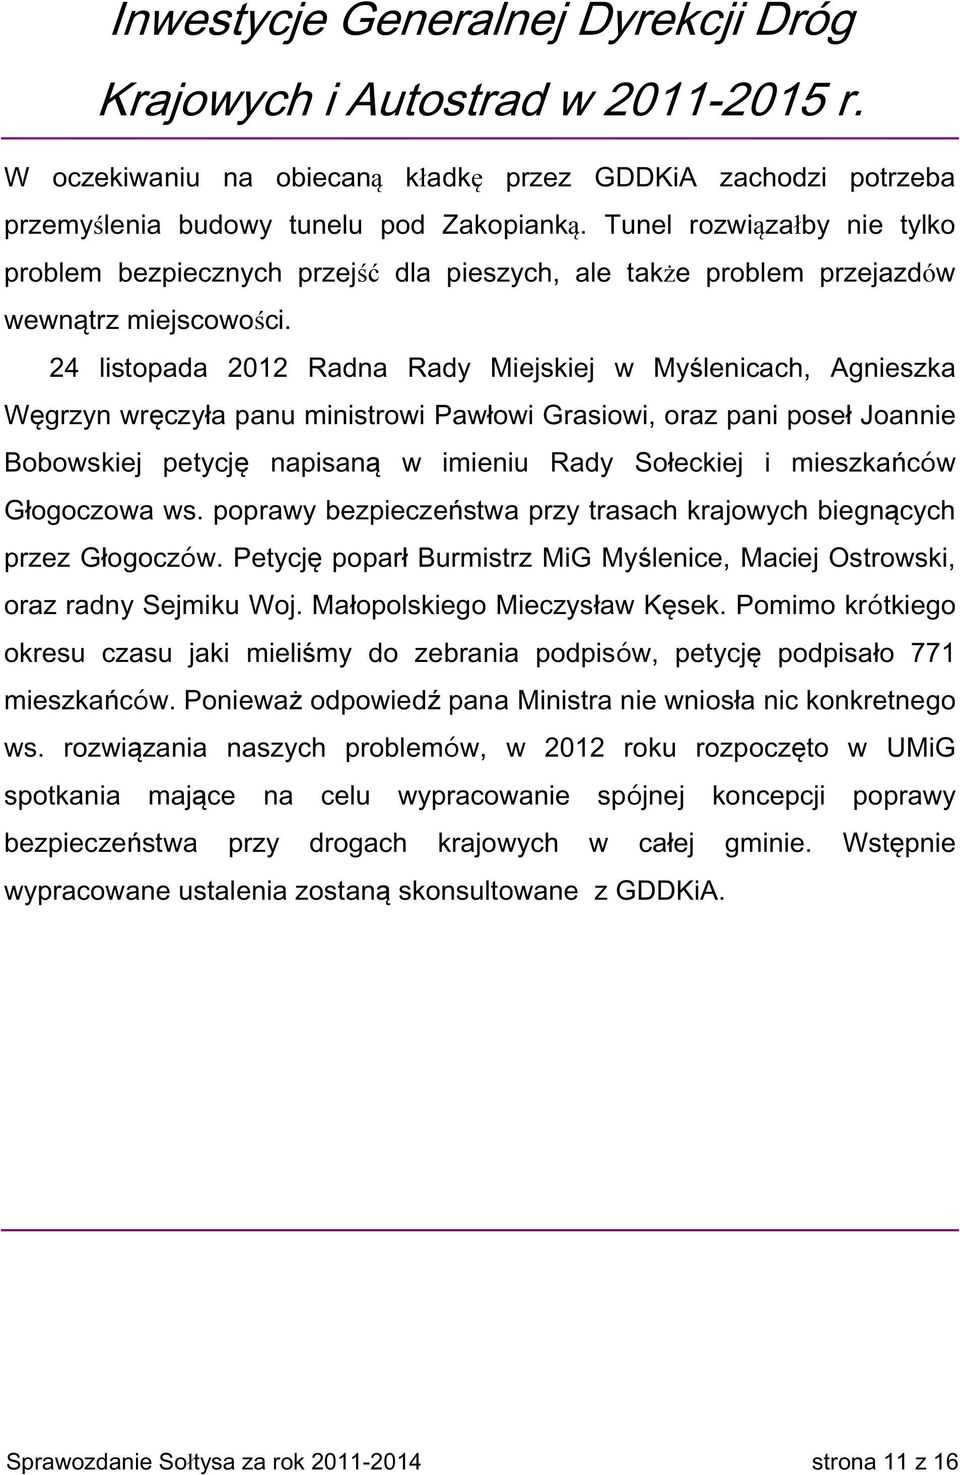 24 listopada 2012 Radna Rady Miejskiej w Myślenicach, Agnieszka Węgrzyn wręczyła panu ministrowi Pawłowi Grasiowi, oraz pani poseł Joannie Bobowskiej petycję napisaną w imieniu Rady Sołeckiej i